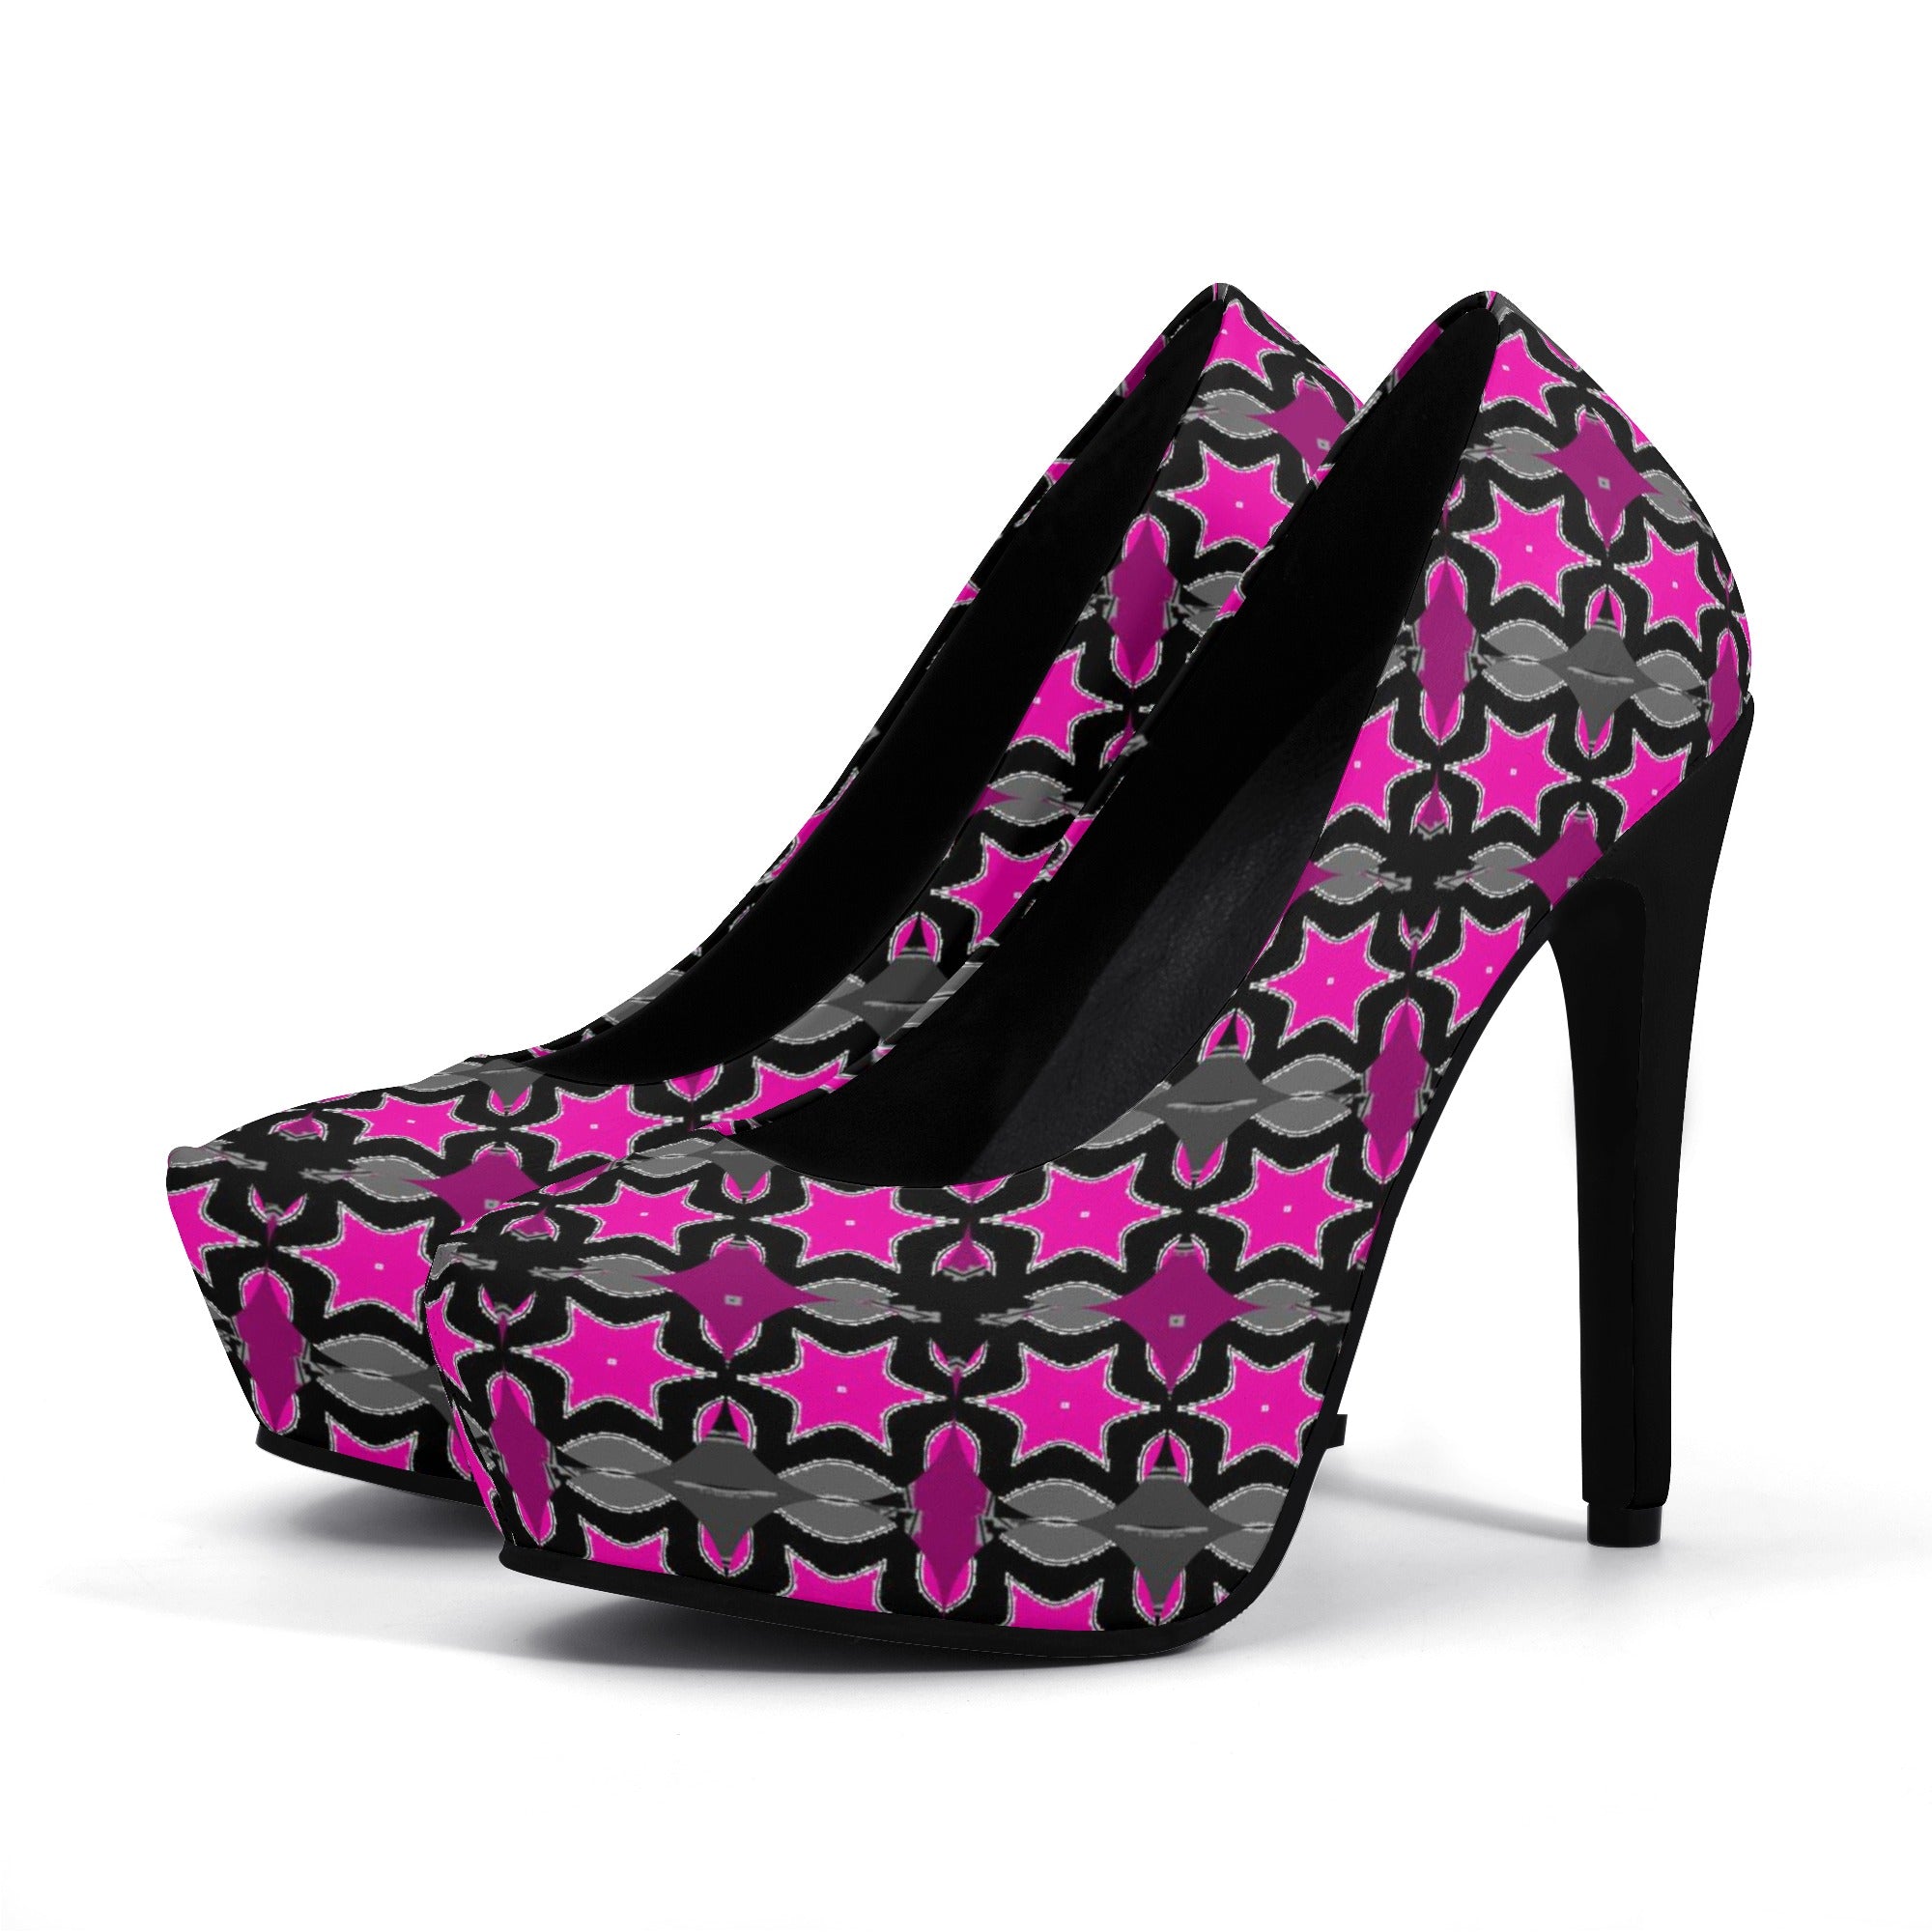 PINK - Pink Star Women Platform Pumps 5 Inch High Heels - womens heels at TFC&H Co.